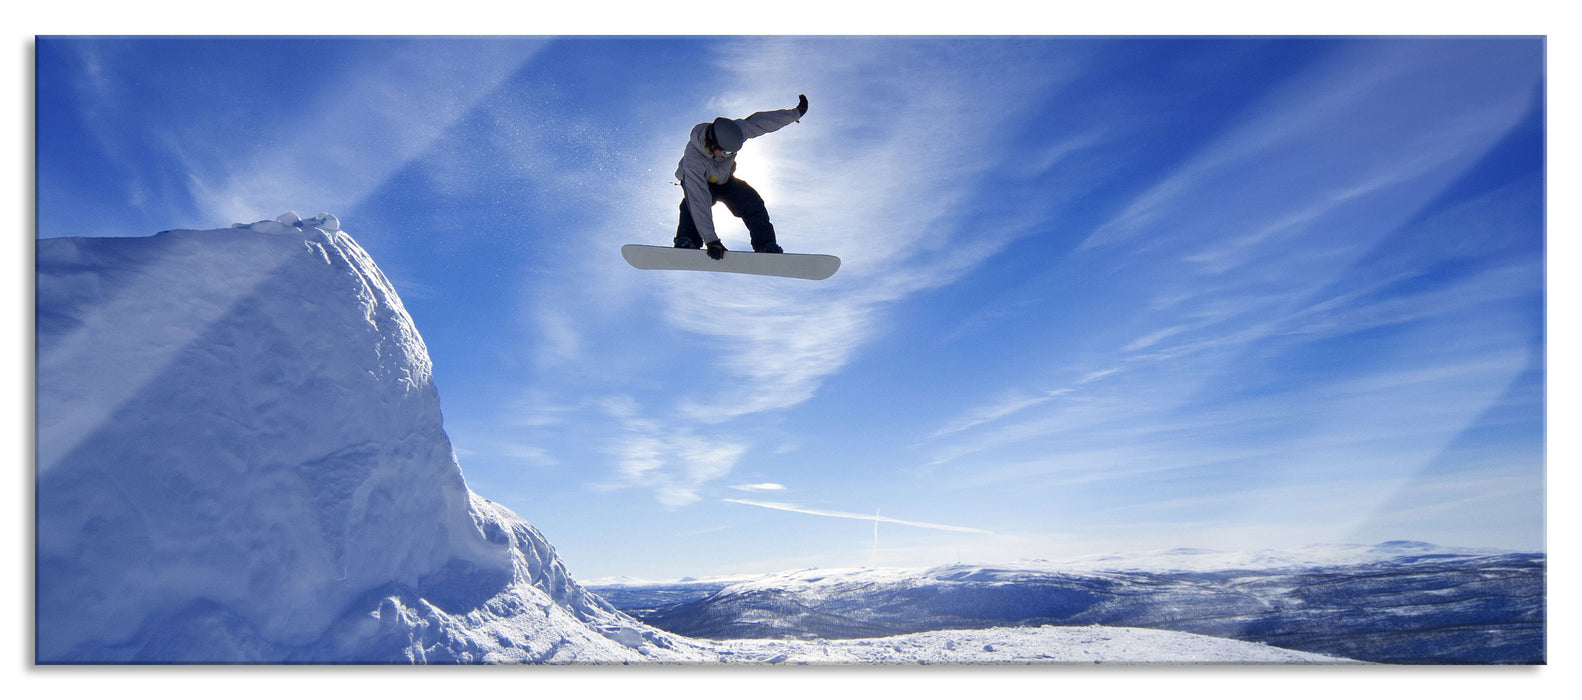 Snowboard Sprung Extremsport, Glasbild Panorama